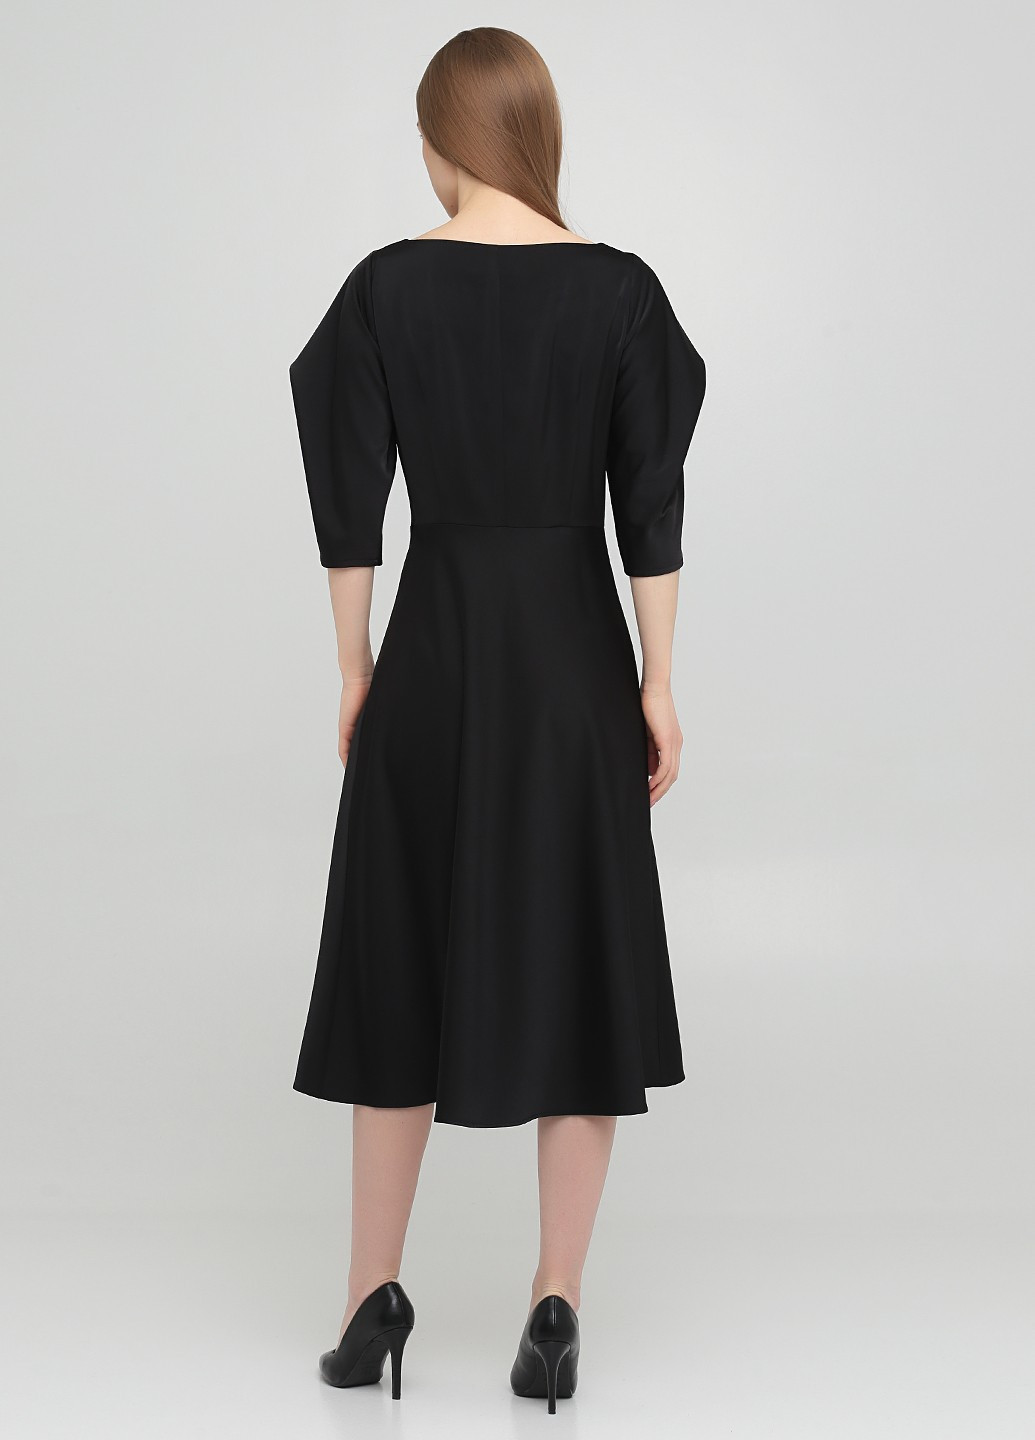 Черное коктейльное платье клеш MaCo exclusive однотонное